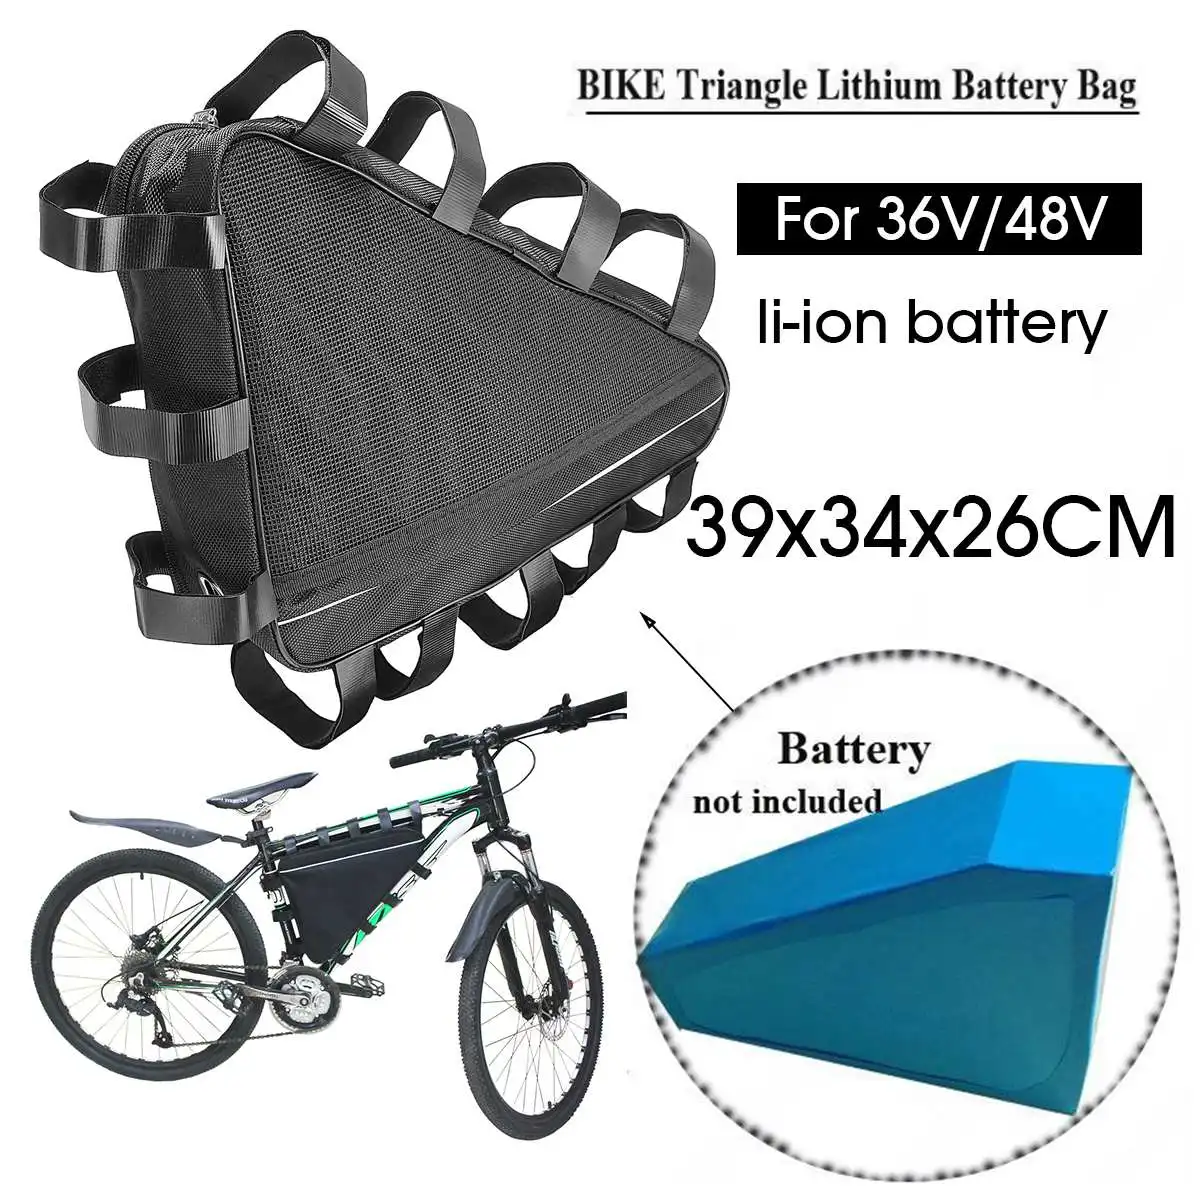 36 V/48 V горный велосипед треугольник литий-ионная батарея сумка для хранения литиевая батарея электрического велосипеда треугольная батарея сумка крышка